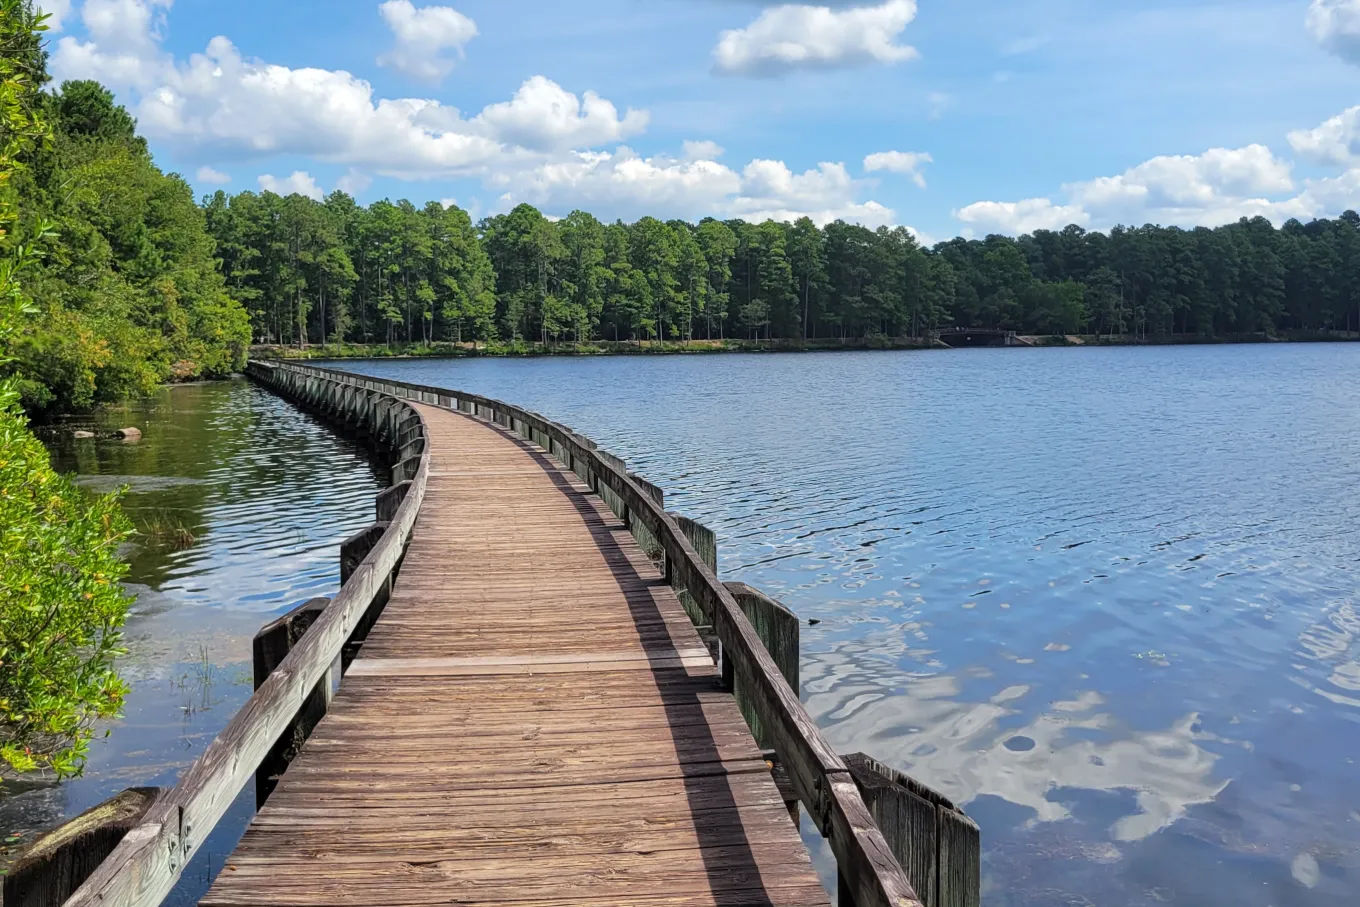 wooden walkway spanning lake